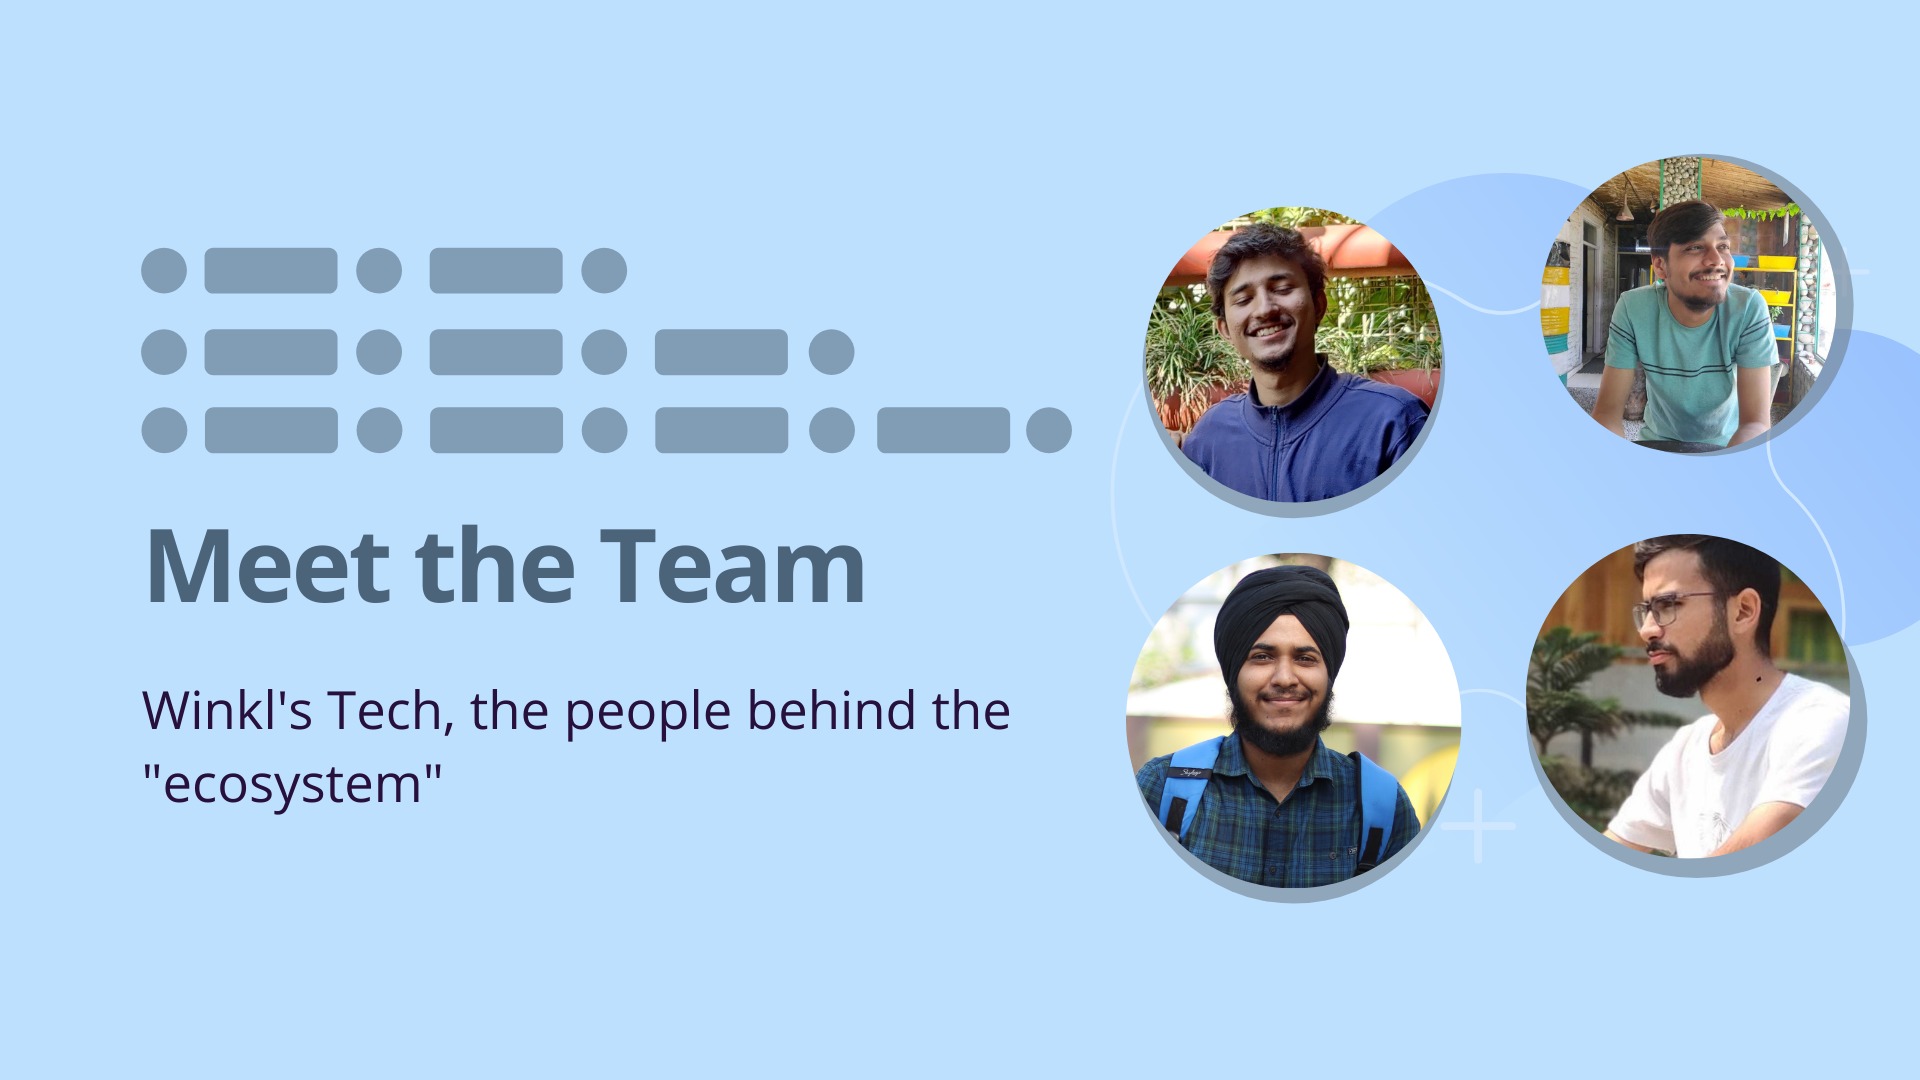 Meet the team - Winkl’s Tech image